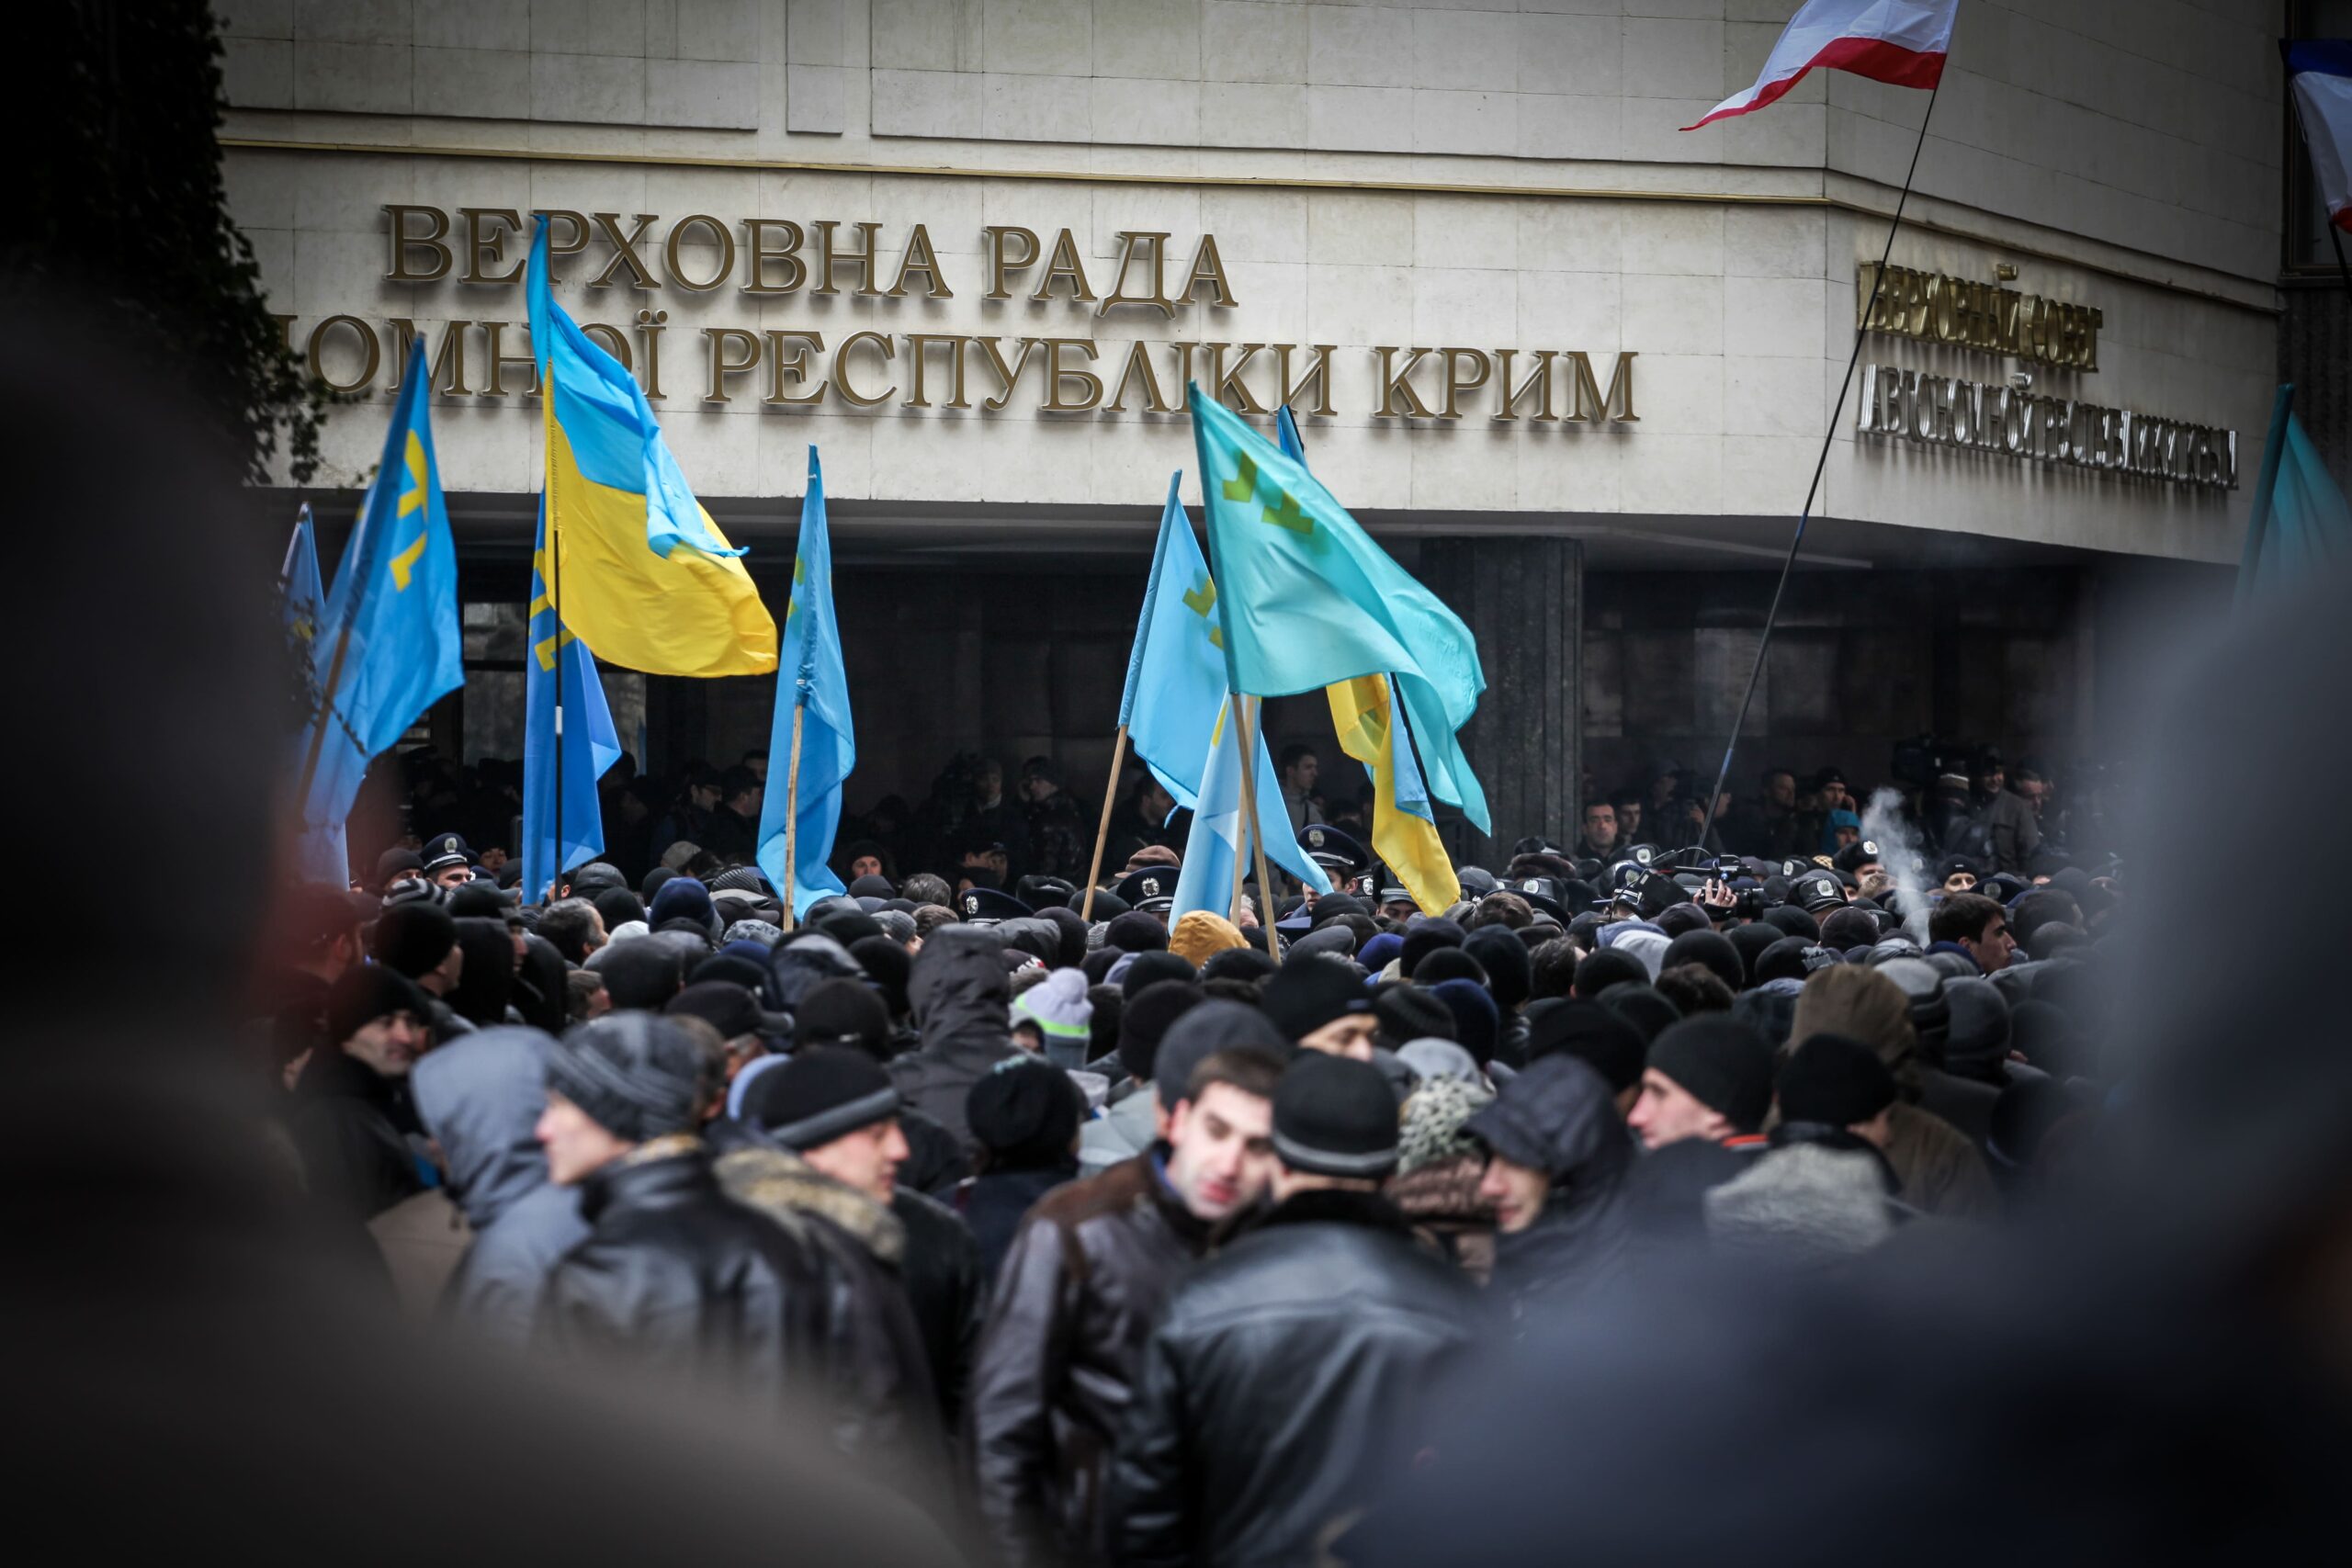 Qırımnıñ işğaline qarşılıq kününe Ukraina Ükümeti tedbirlerni tasdıqladı